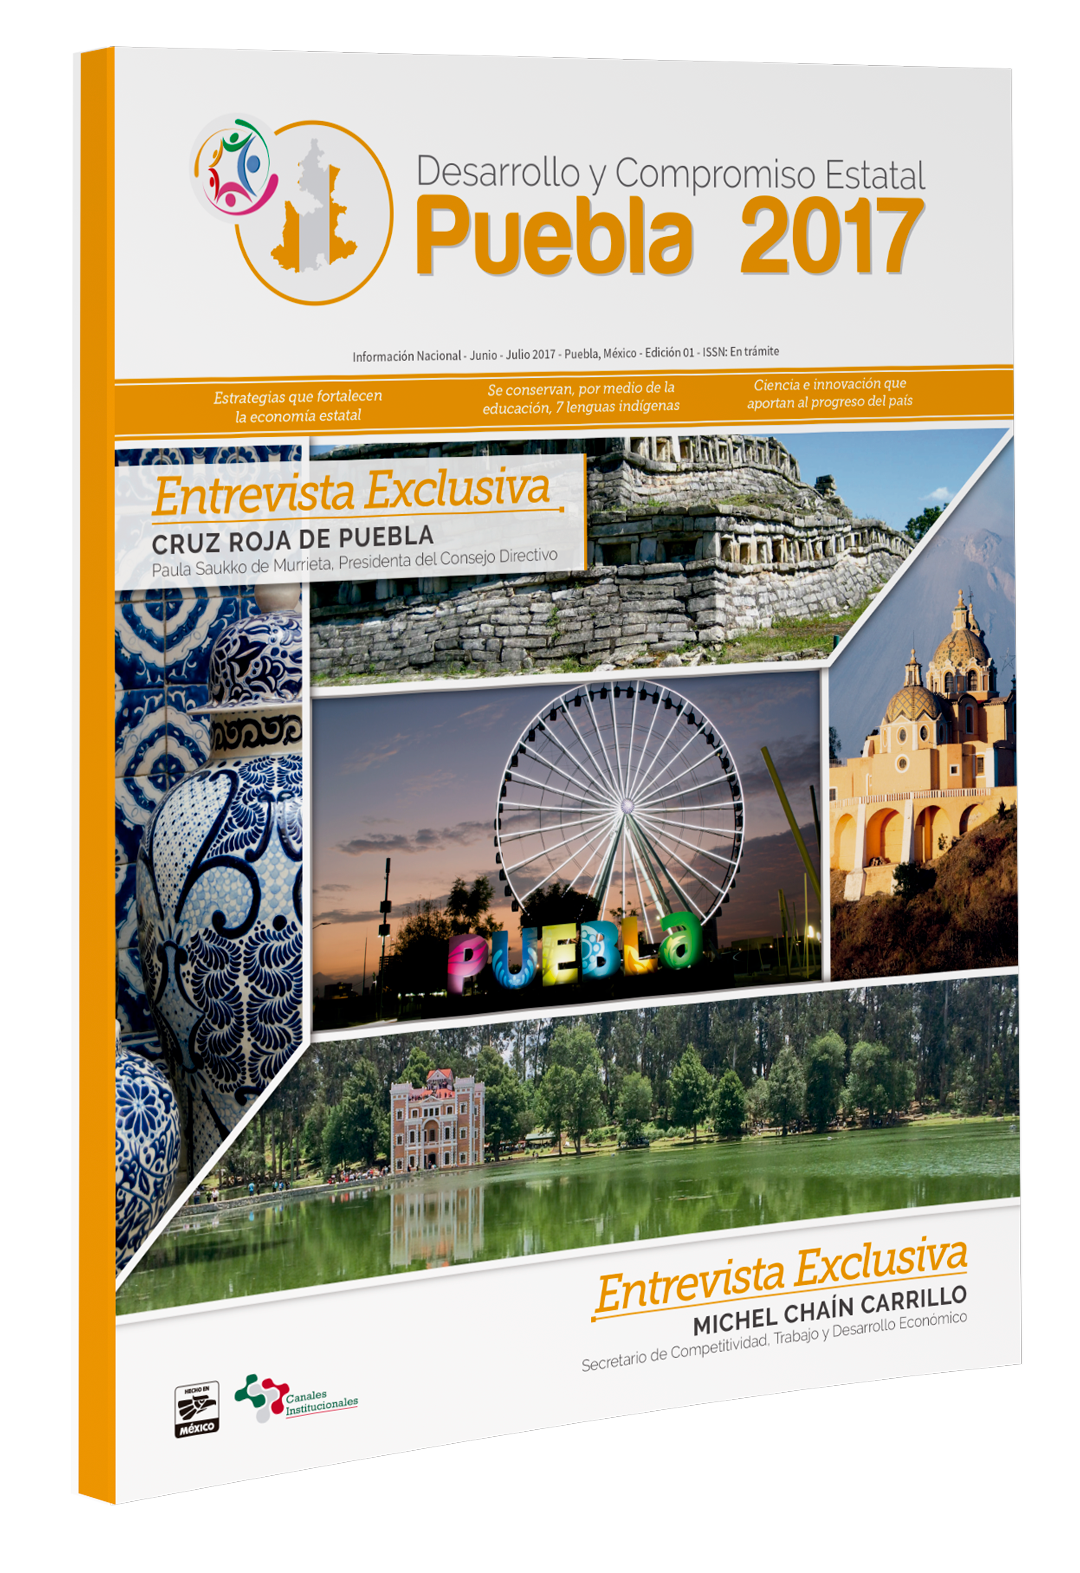 Desarrollo y Compromiso Estatal Puebla 2017